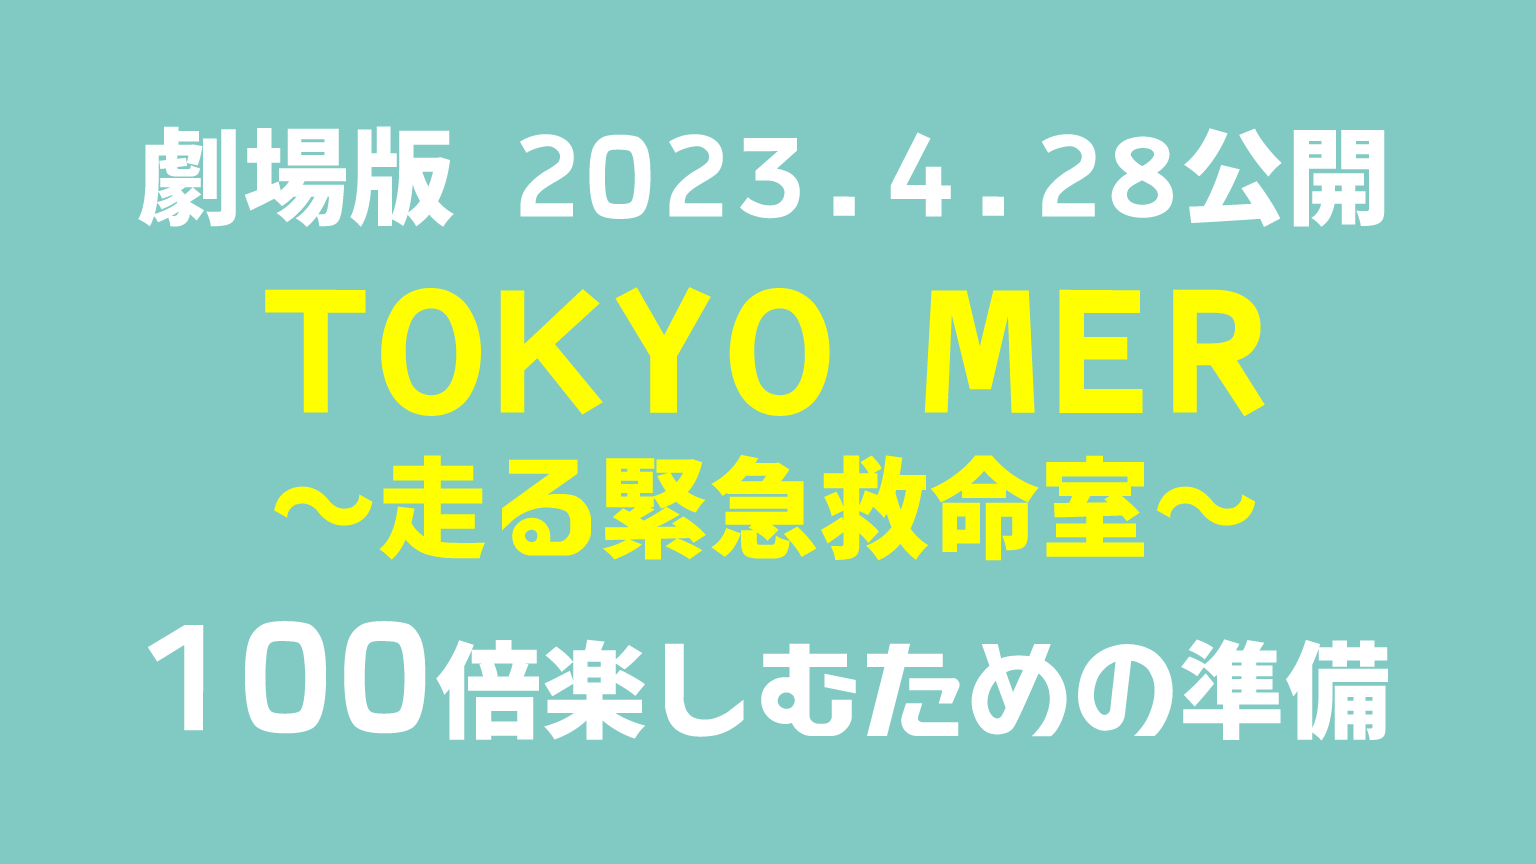 劇場版『TOKYO MER』を100倍楽しむための準備